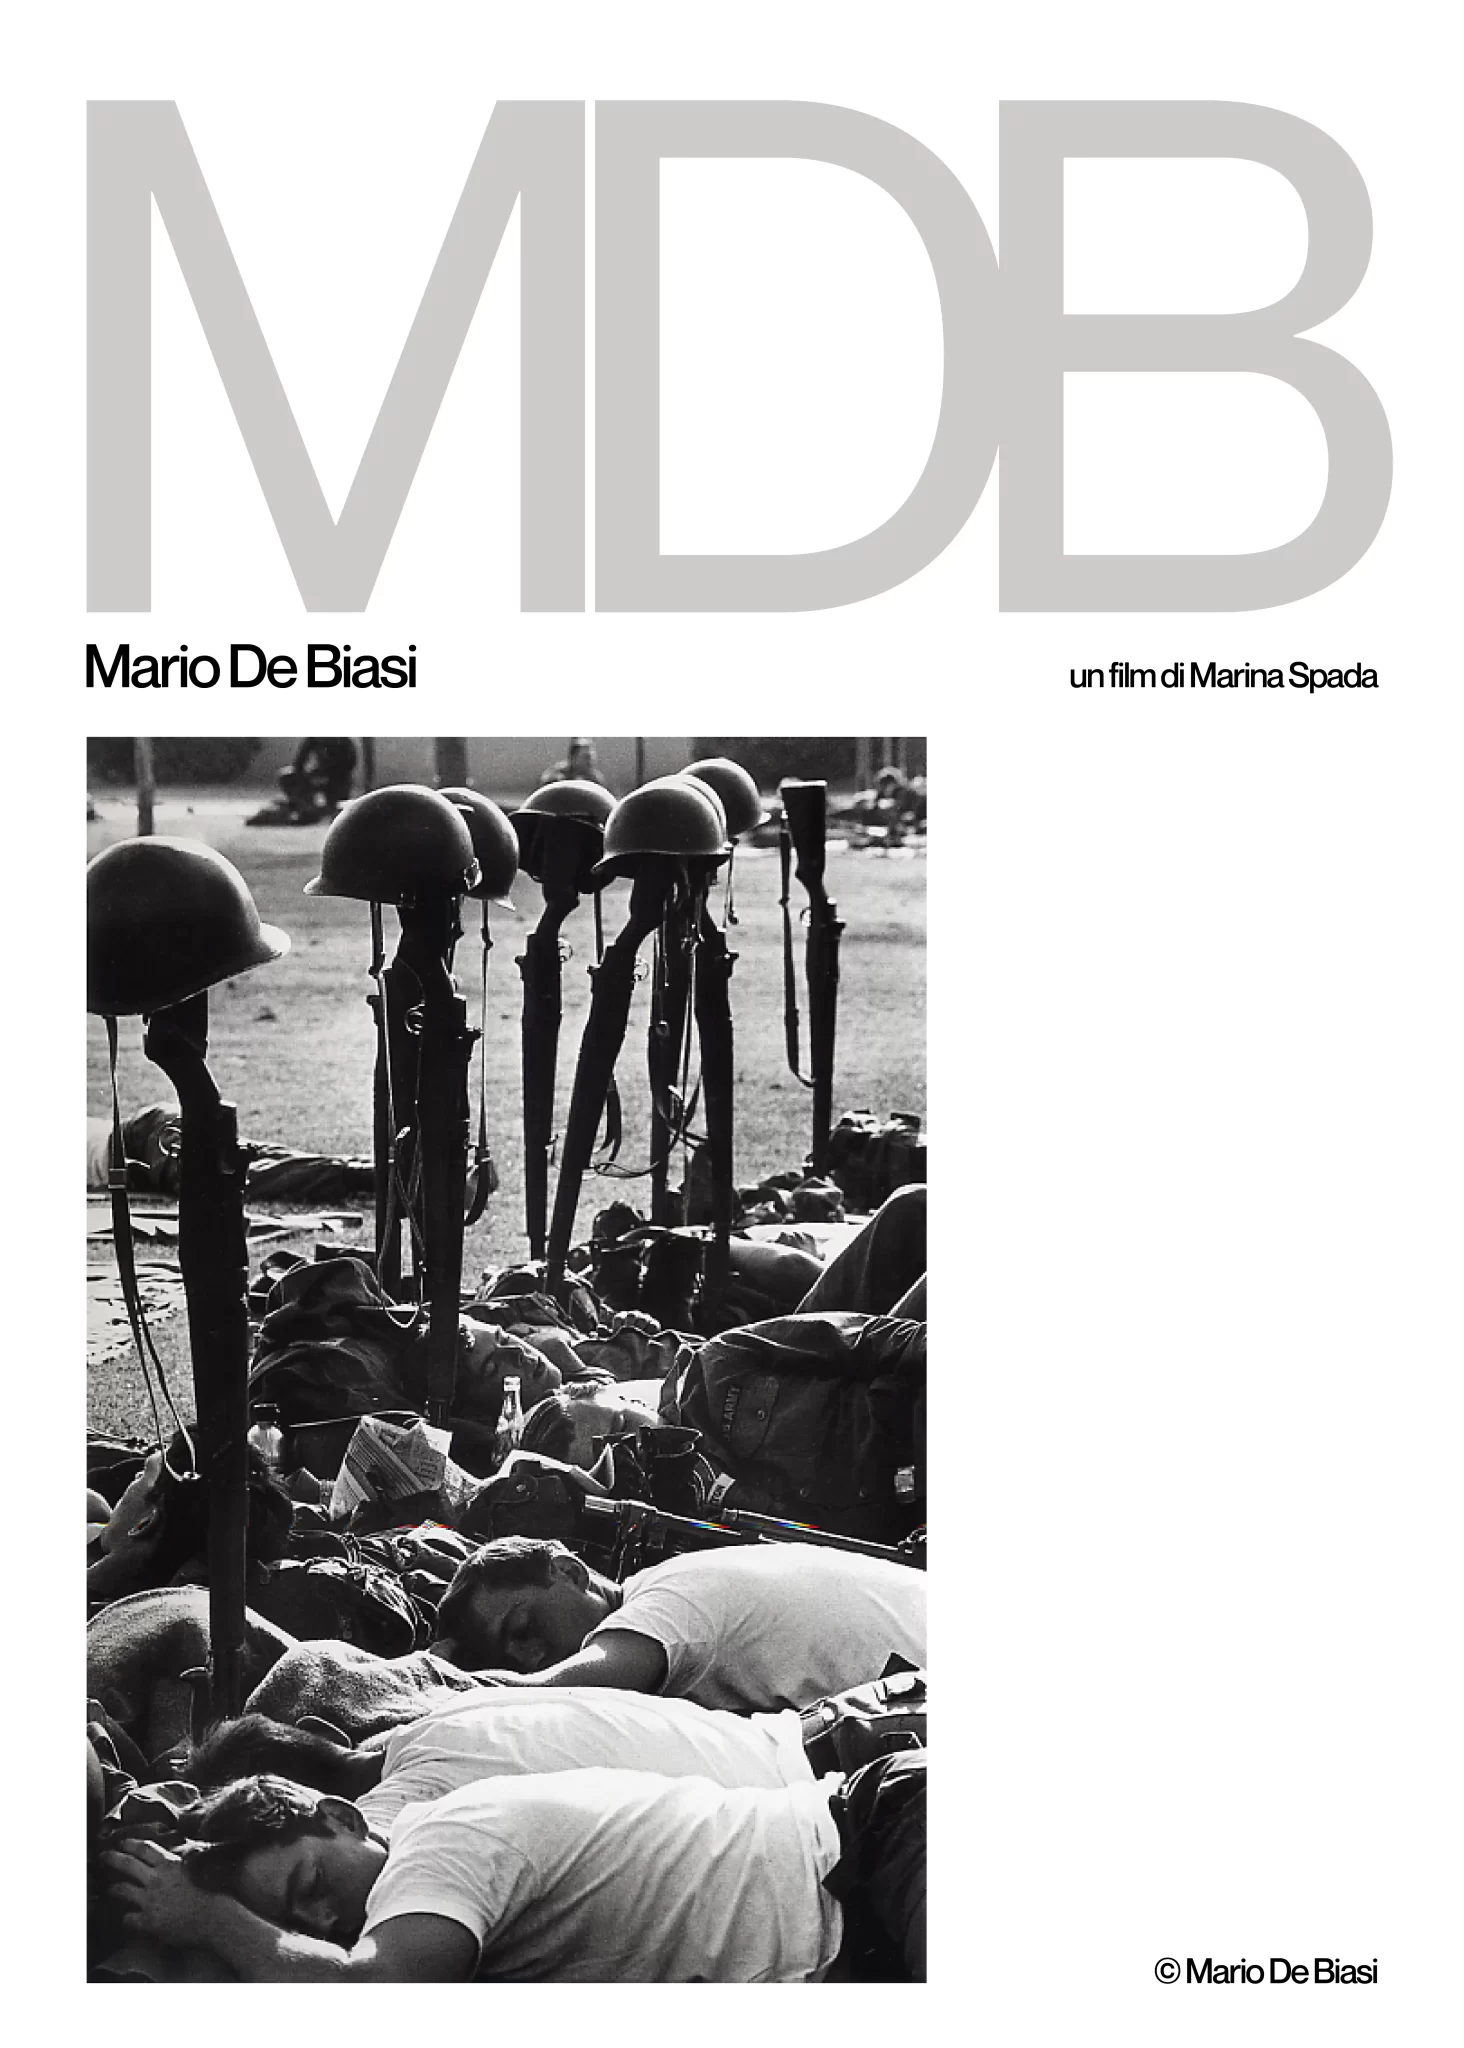 Locandina: MDB, Mario De Biasi, un film di Marina Spada. Fotografia in bianco e nero di soldati dormienti con accanto dei fucili, scattata da Mario De Biasi.